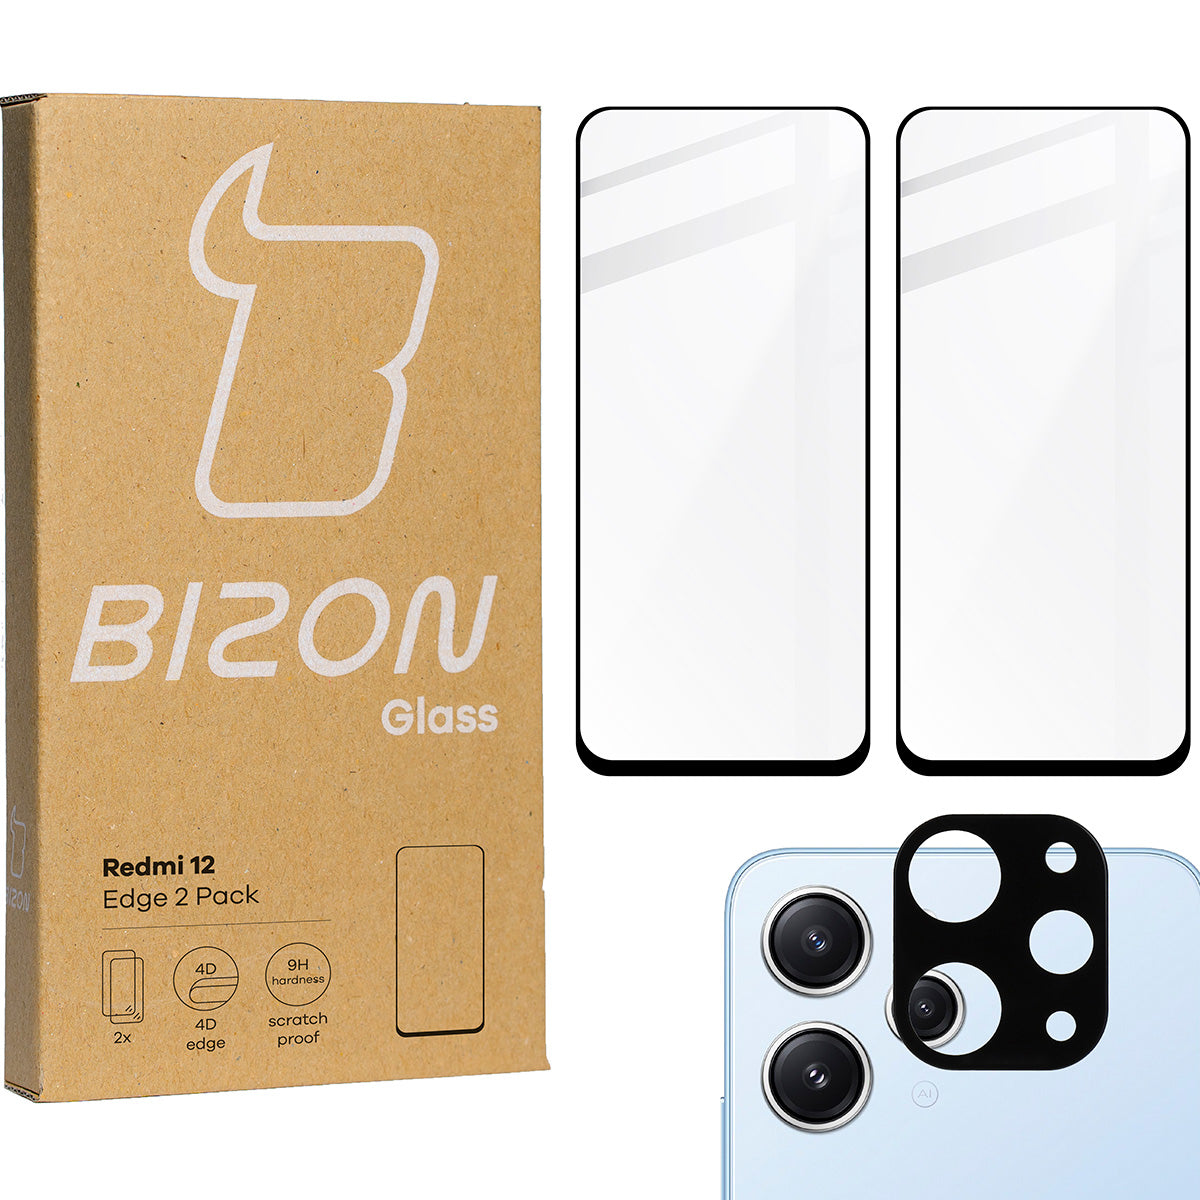 Gehärtetes Glas Bizon Glass Edge 2 Pack - 2 Stück + Kameraschutz für Redmi 12, Schwarz